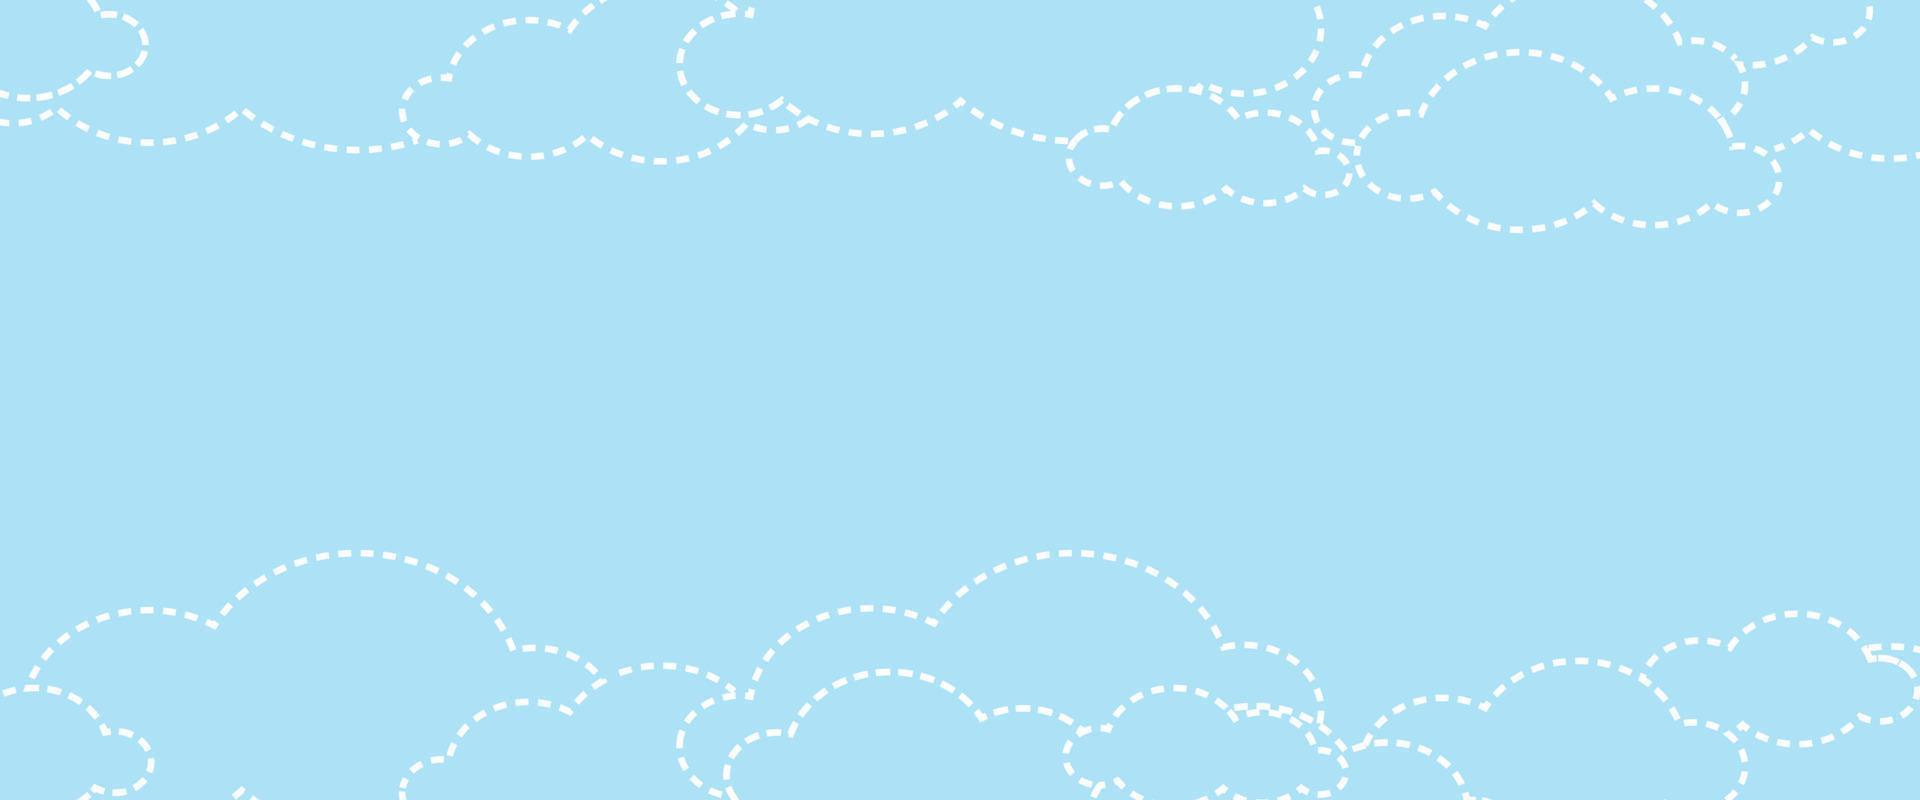 Vektor abstrakter Wolkenhintergrund für Text auf leerem Hintergrund und Kopierraum mit lustigem Design-Stil